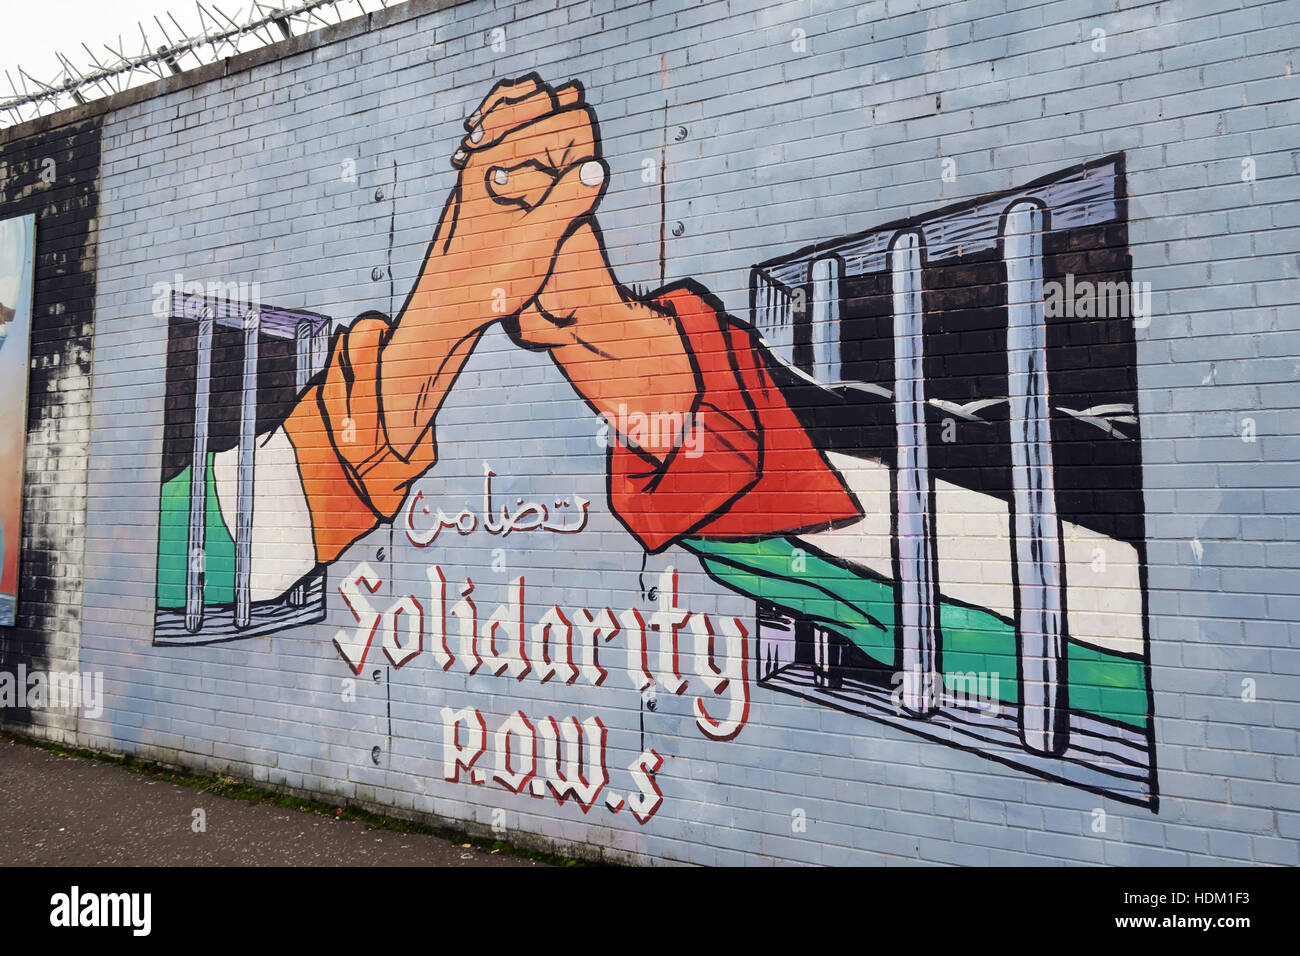 Belfast Falls Rd Rebublican à fresque murale de paix, de solidarité avec les prisonniers - des mains entre les cellules Irlande Palestine Banque D'Images